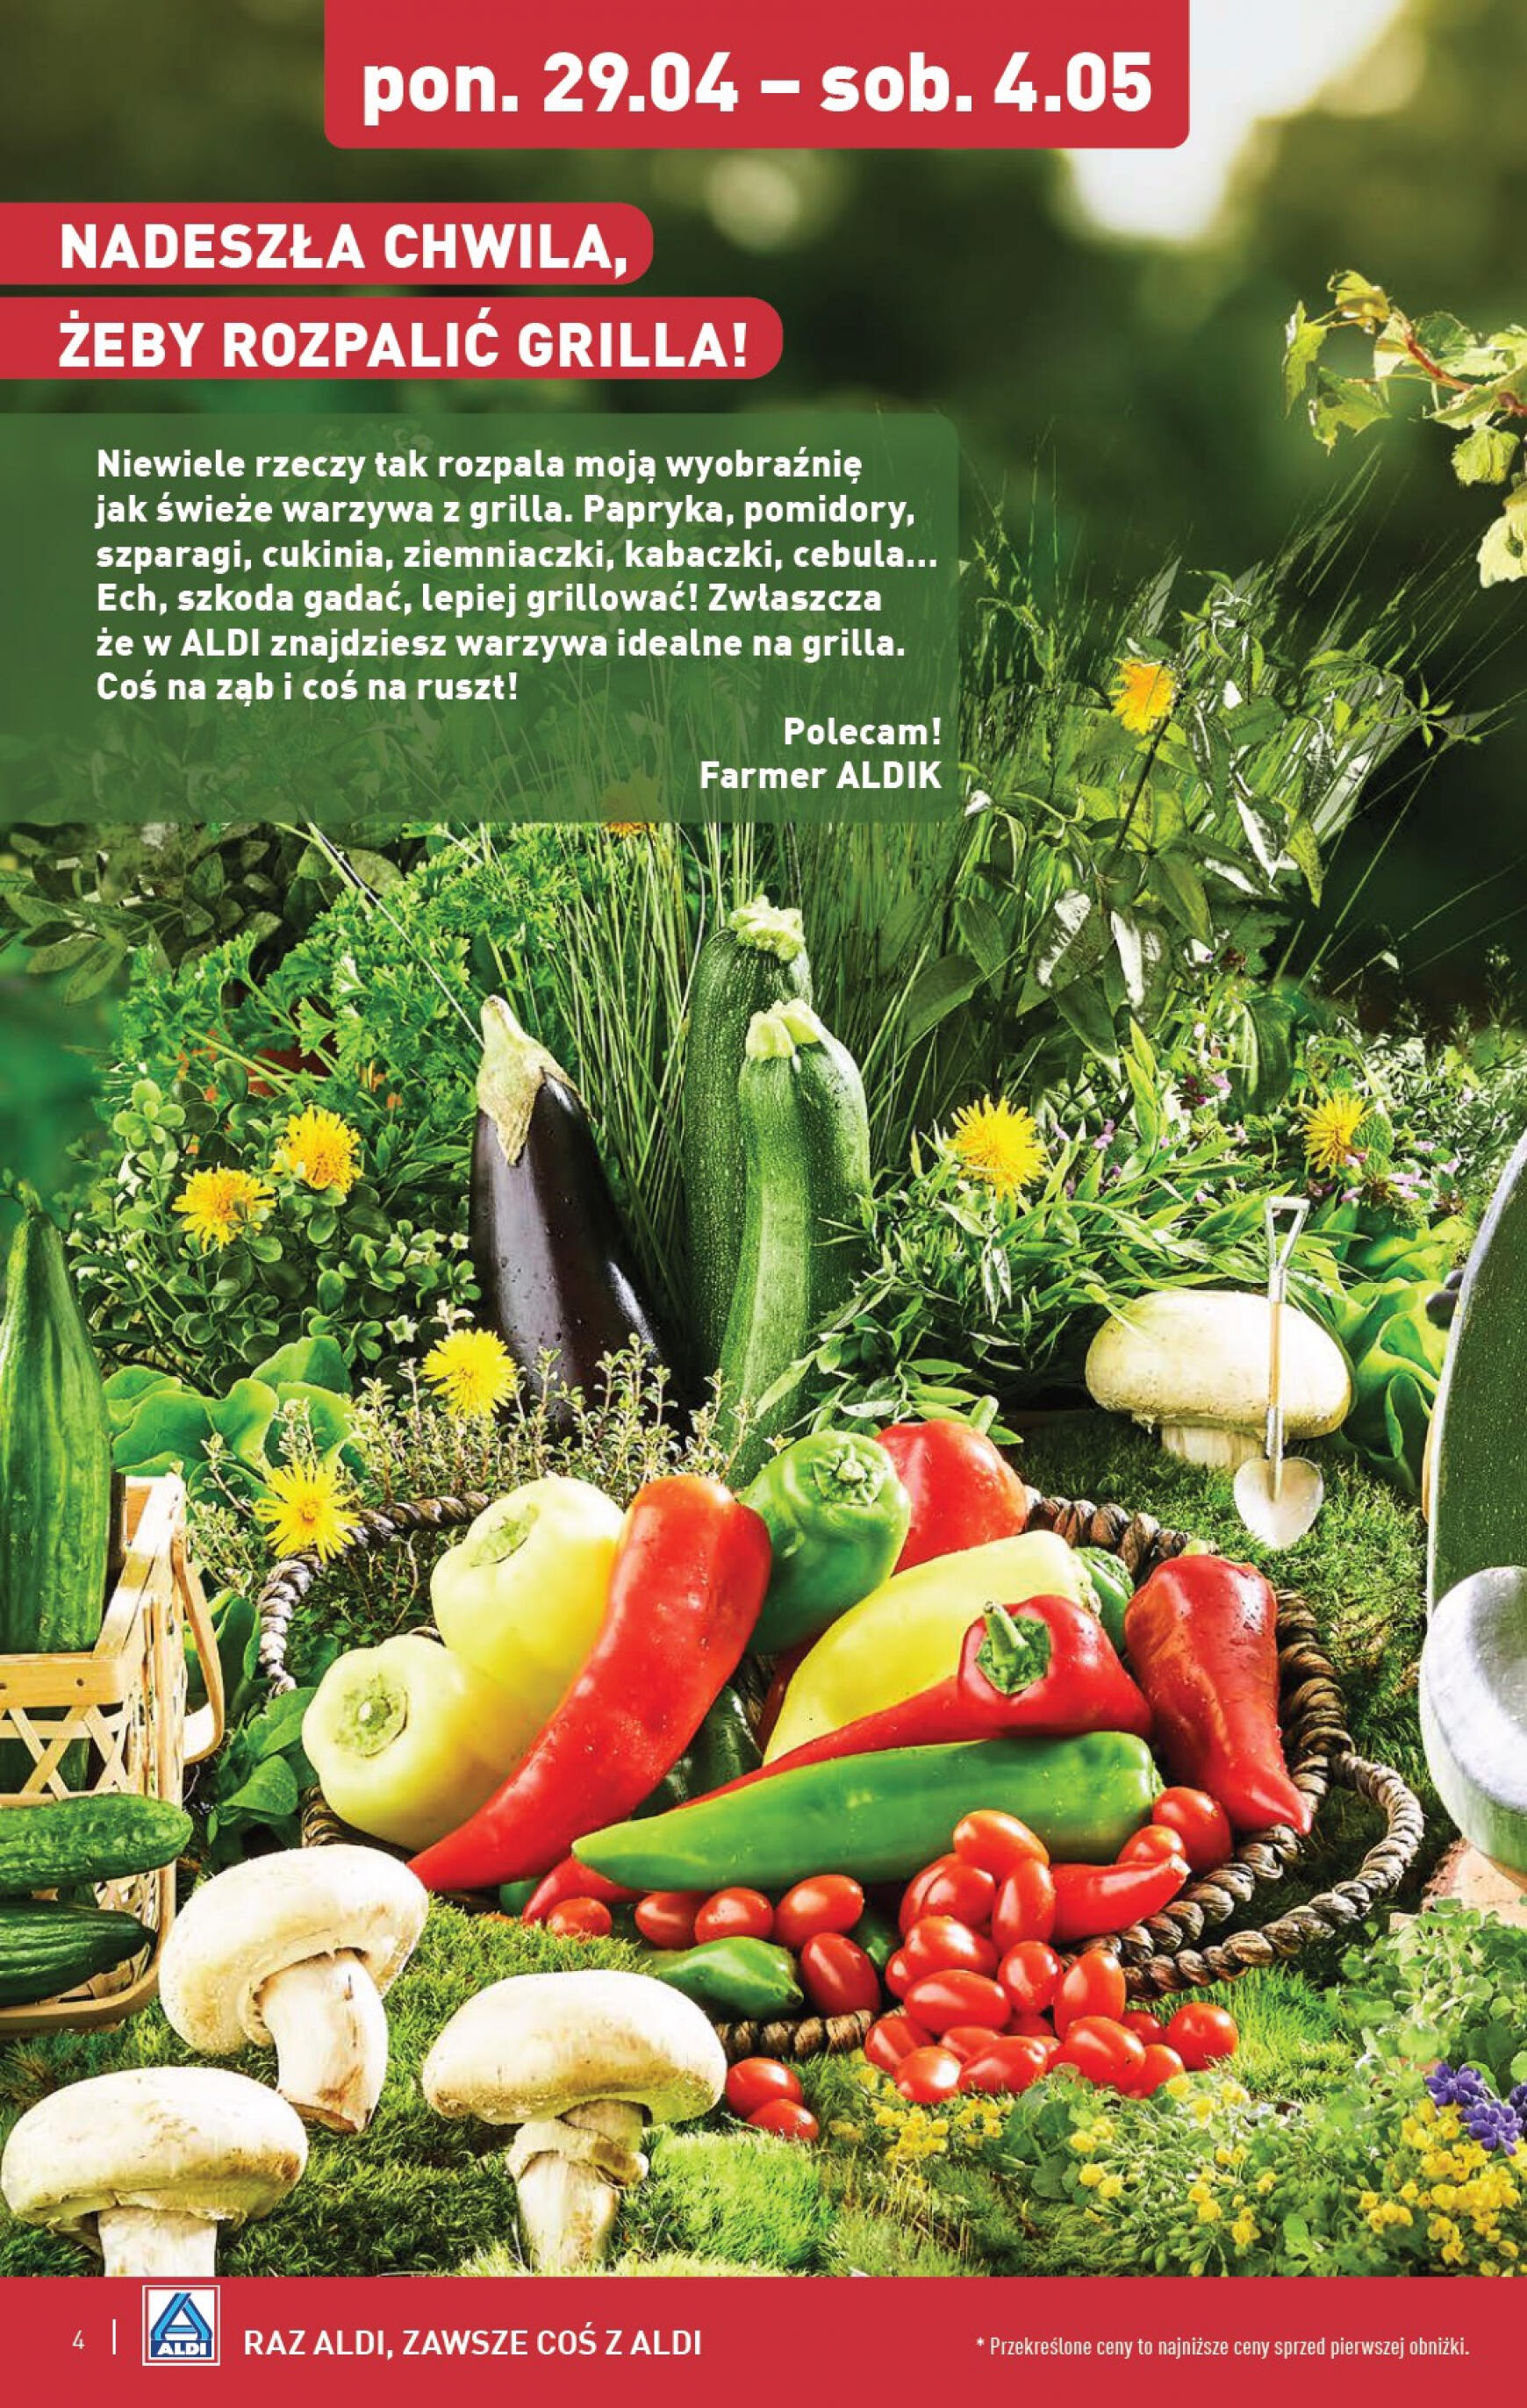 aldi - ALDI - Farmer ALDIK poleca świeże owoce i warzywa gazetka aktualna ważna od 29.04. - 04.05. - page: 4